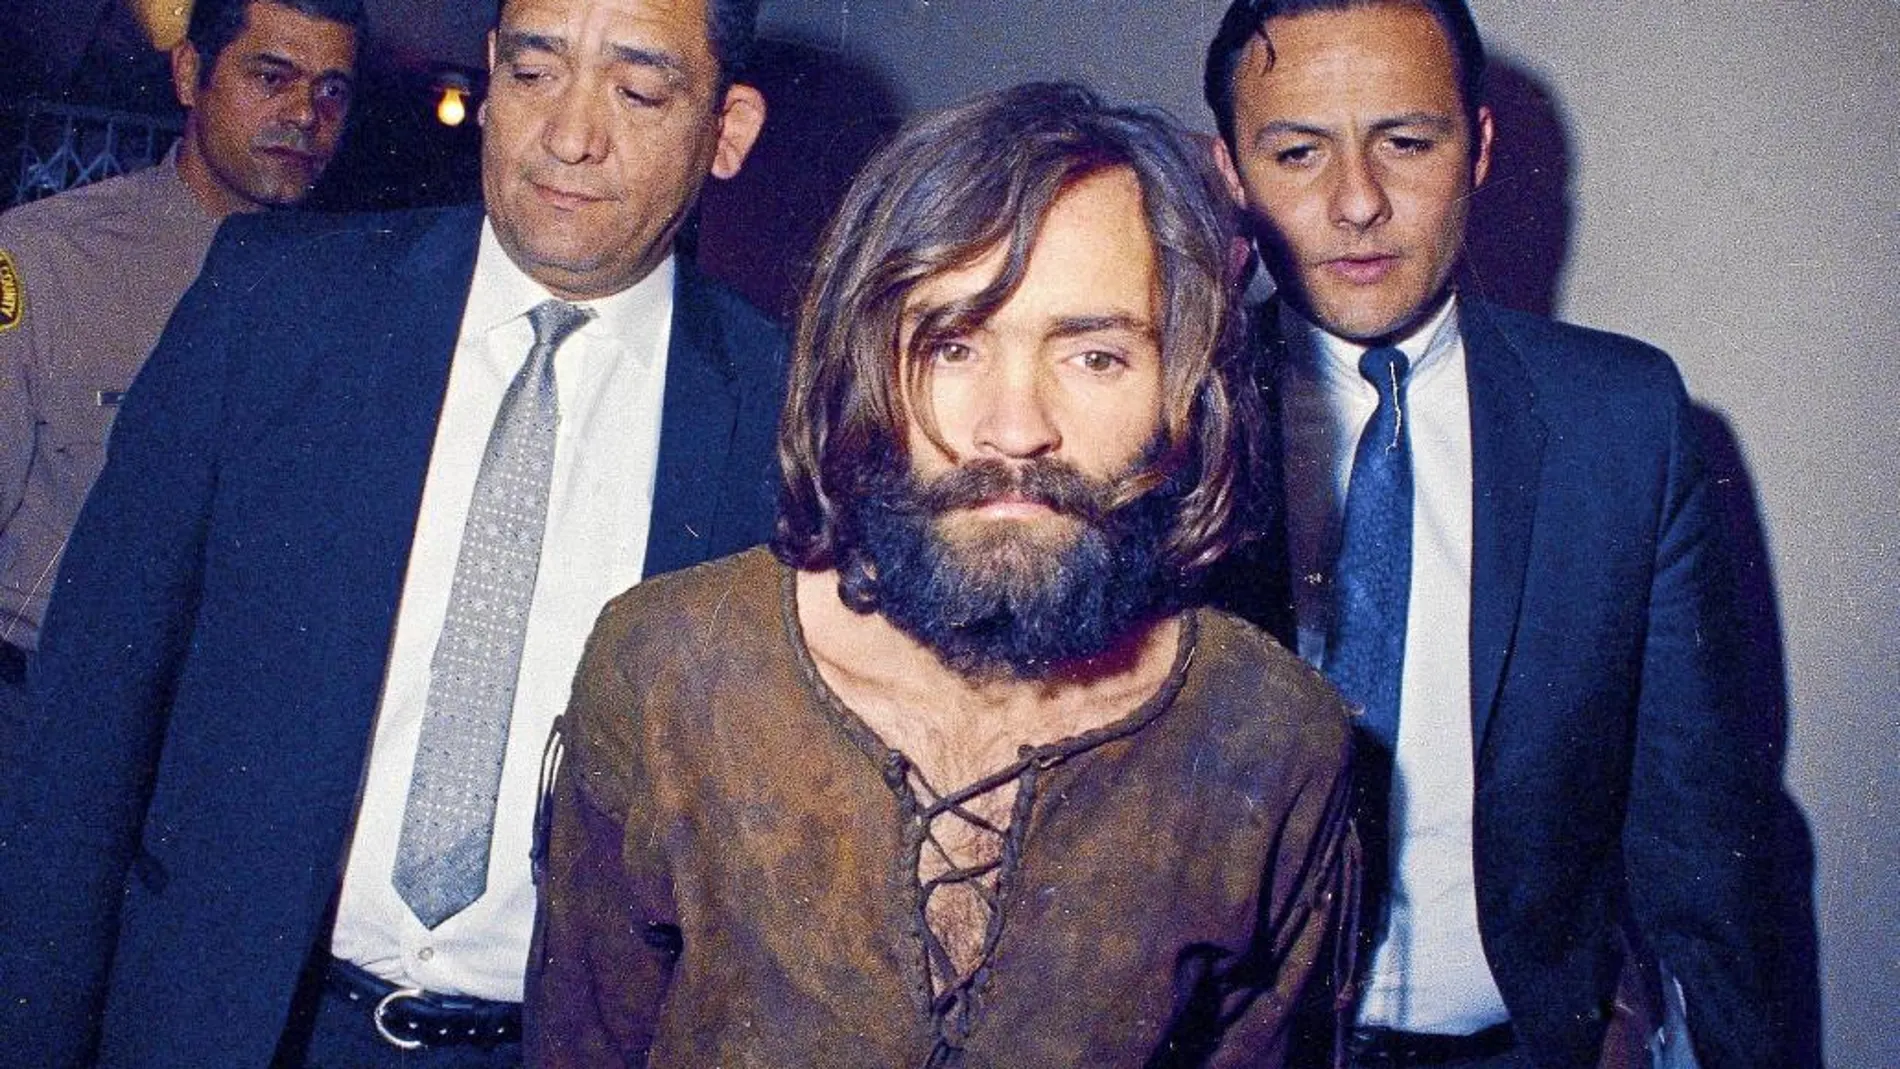 El asesino Charles Manson, custodiado por dos agentes en una imagen de 1969